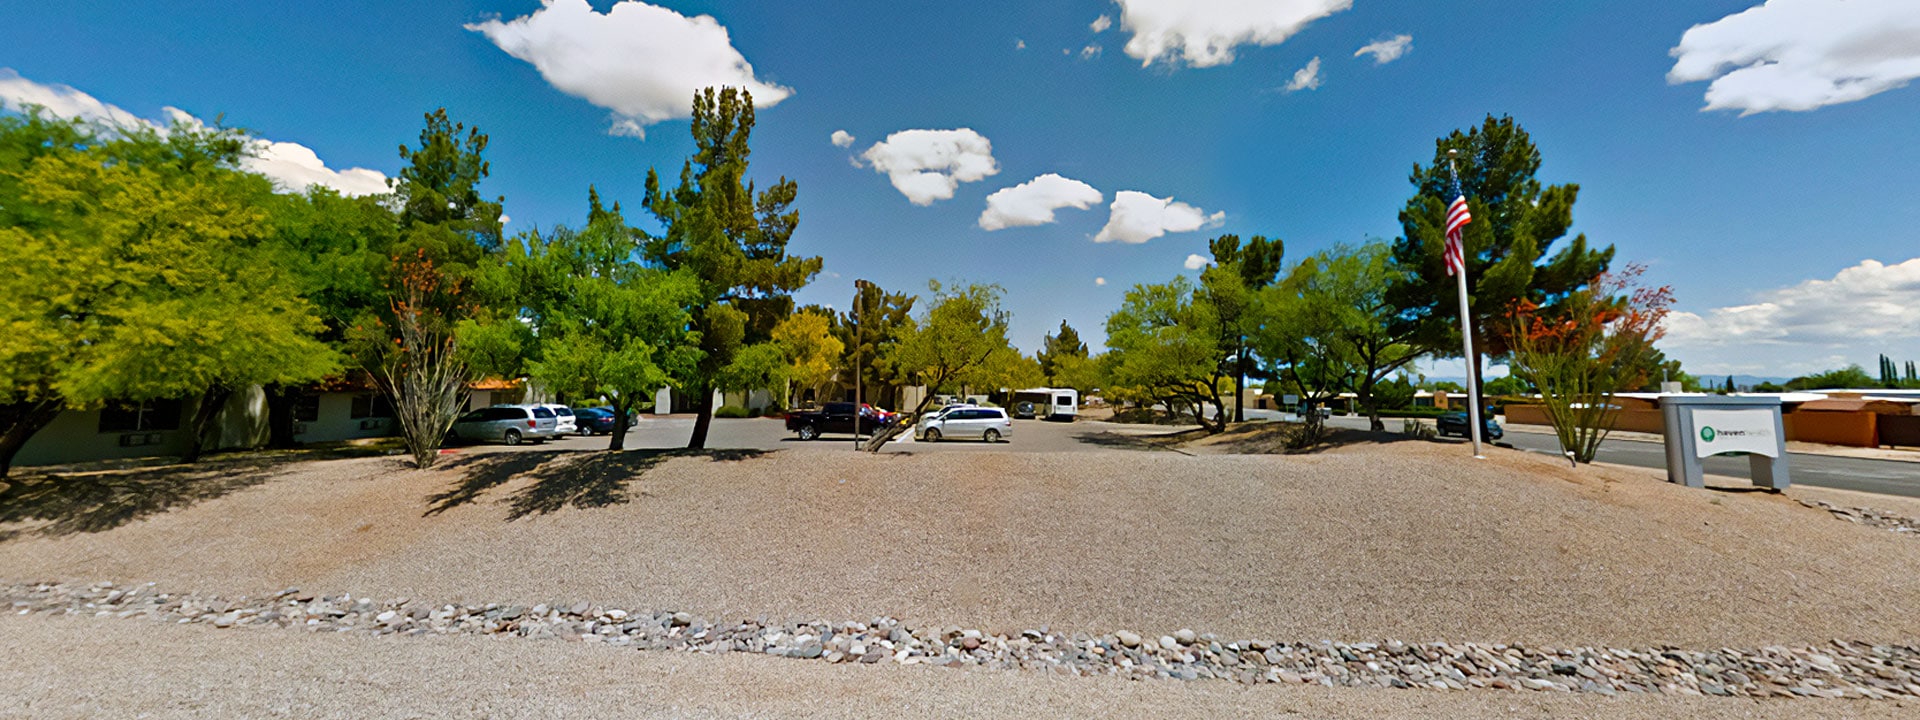 #1 Skilled Nursing Center in Sierra-Vista, AZ | Haven Health